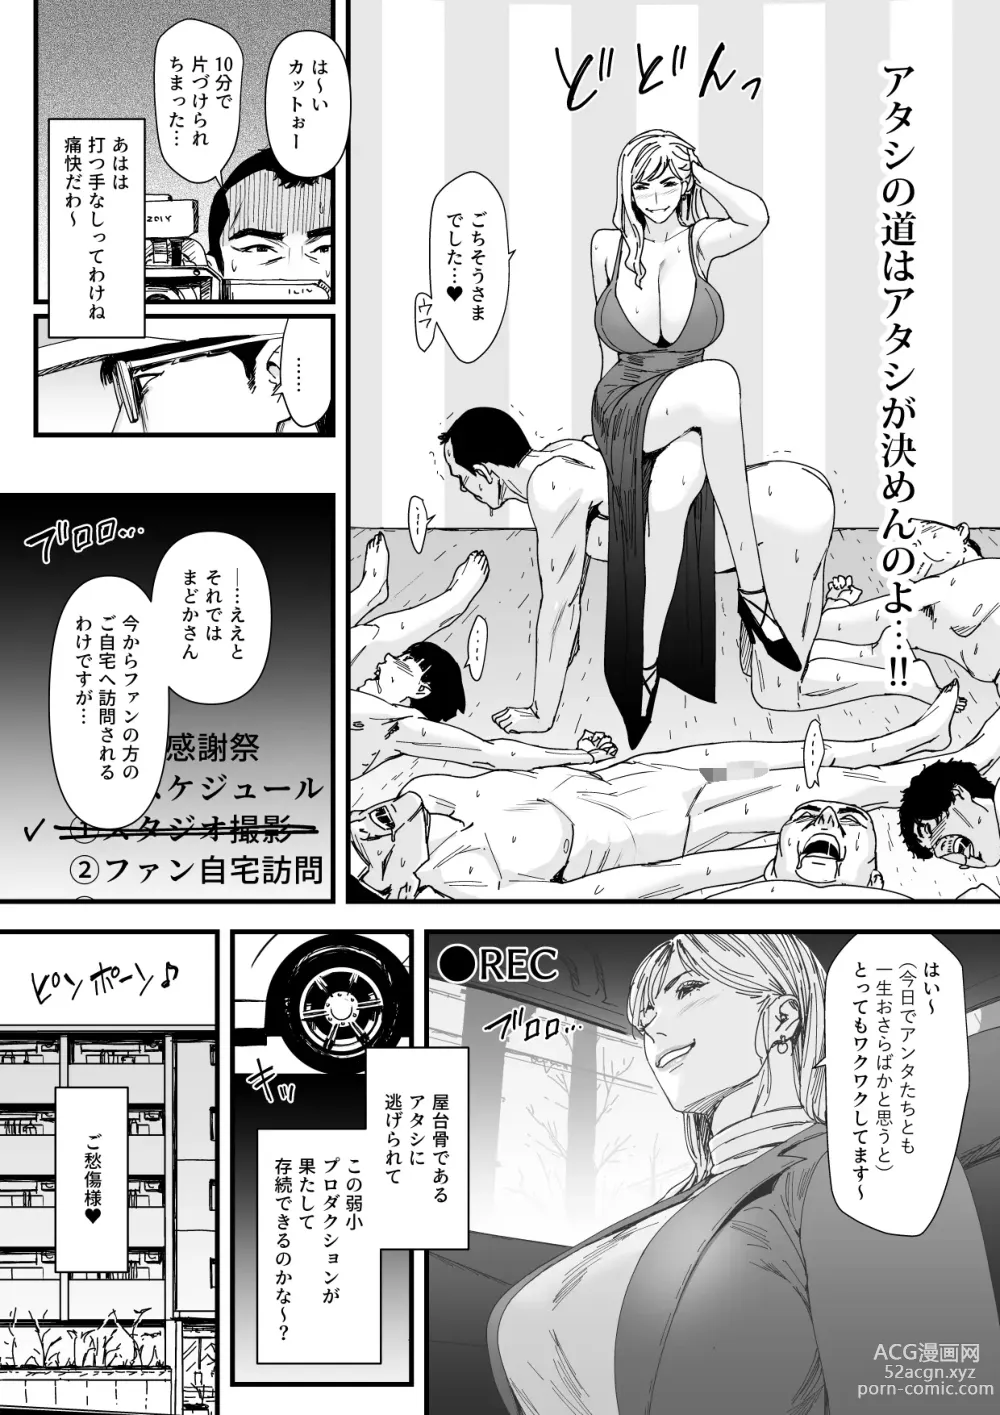 Page 7 of doujinshi カリスマAV女優（23歳）を引退撤回するまでイカせまくる 3 『ファン感謝祭編』